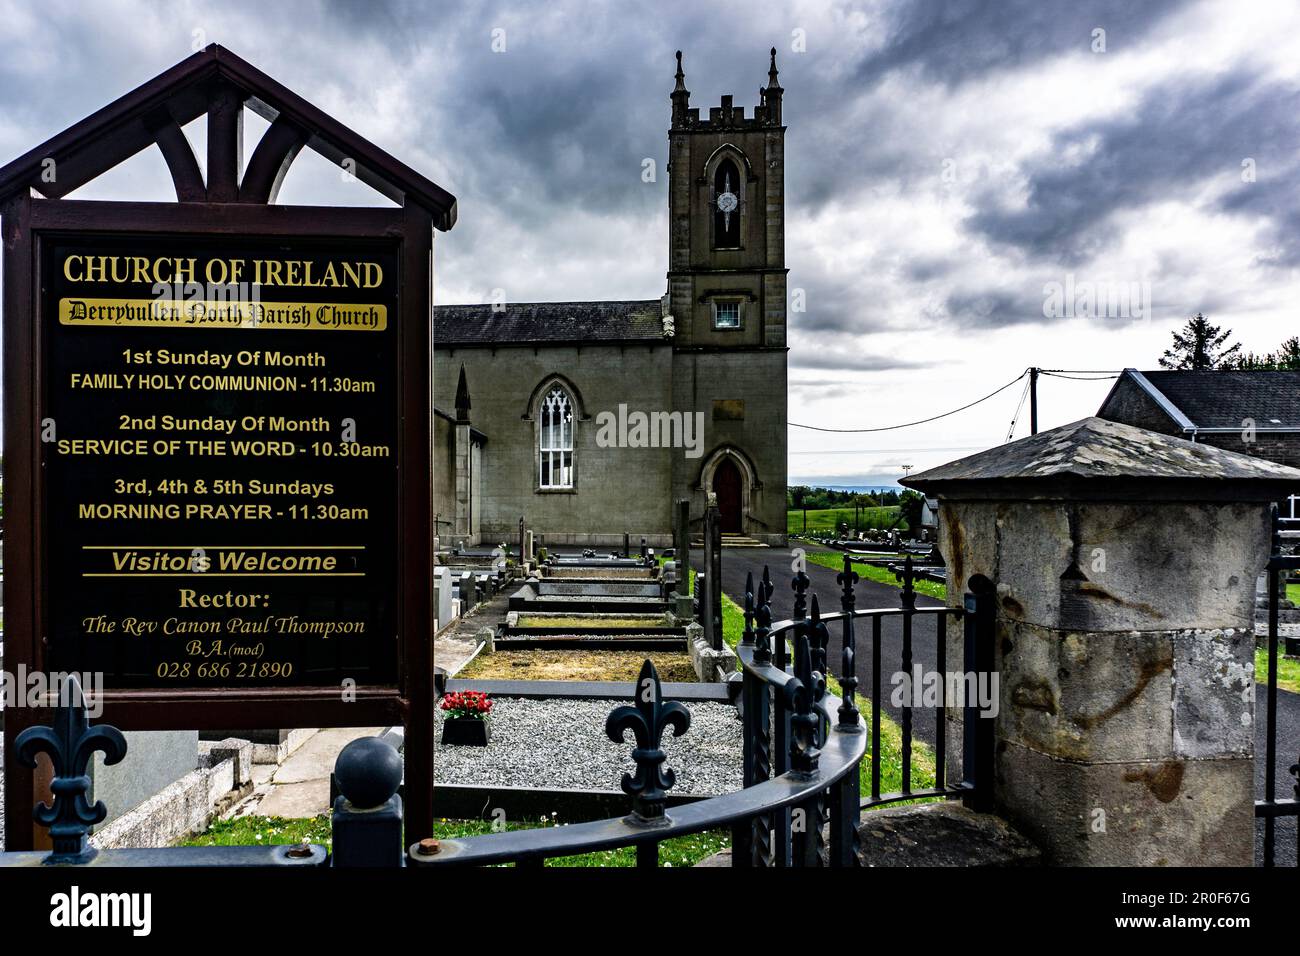 Church of Ireland, Derrybullen North, parish church and graveyard, irvinestown, Co Fermanagh, Northern Ireland. Stock Photo